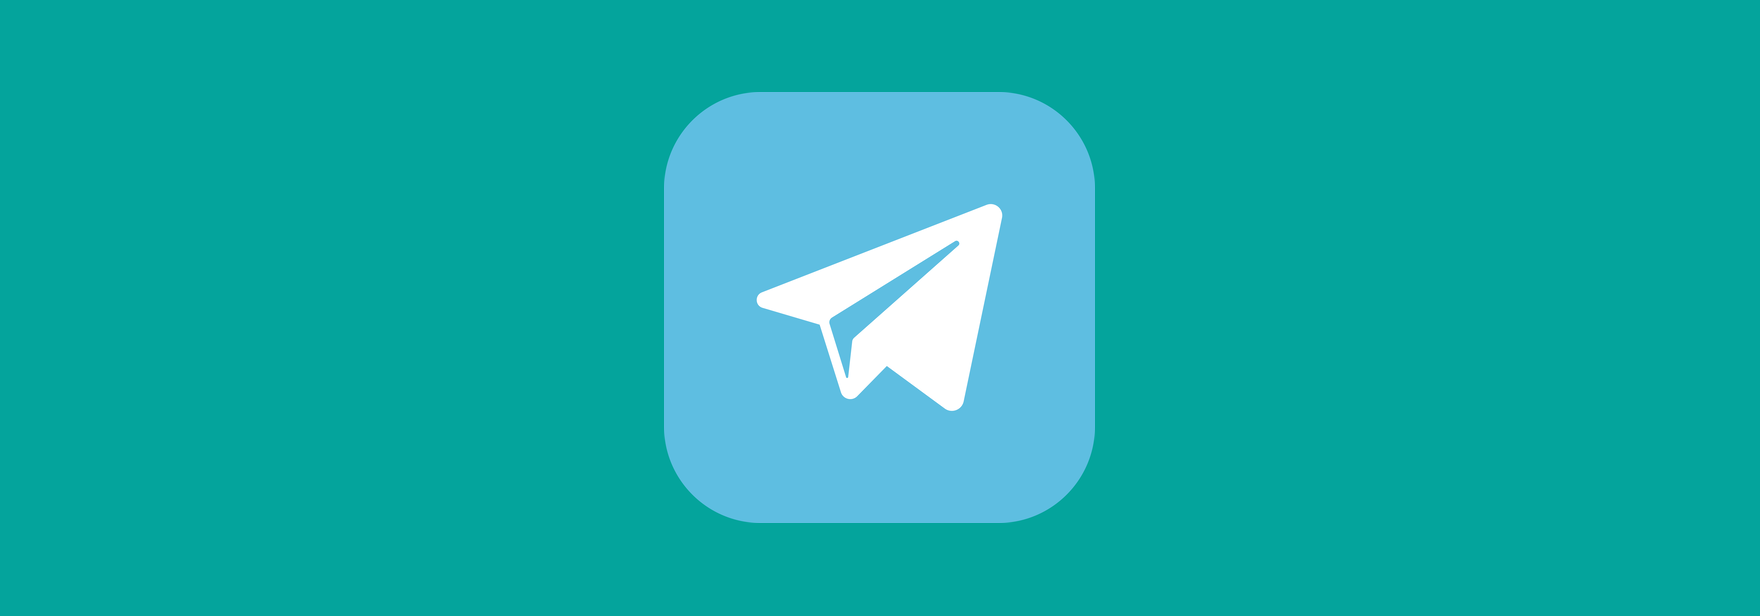 Telegram запустил таргетированную рекламу из-за «событий в Восточной Европе»